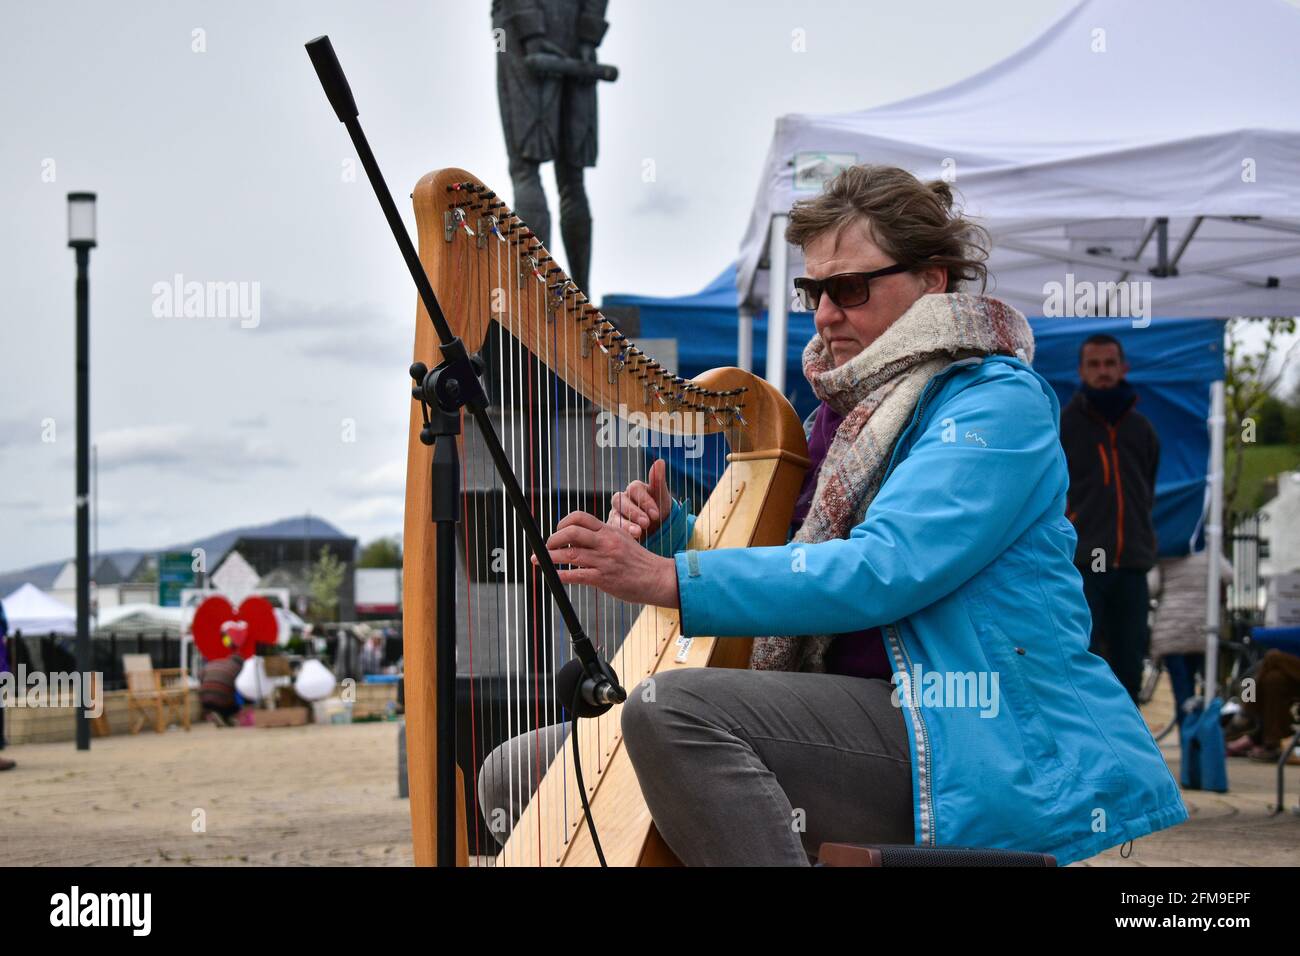 Bantry, West Cork, Irlande. Le 7 mai, Streets of Bantry nous sommes occupés aujourd'hui car c'est le premier marché du mois, musicien jouant de la harpe au marché Bantry. Crédit: Karlis Dzjamko/Alay Live News Banque D'Images